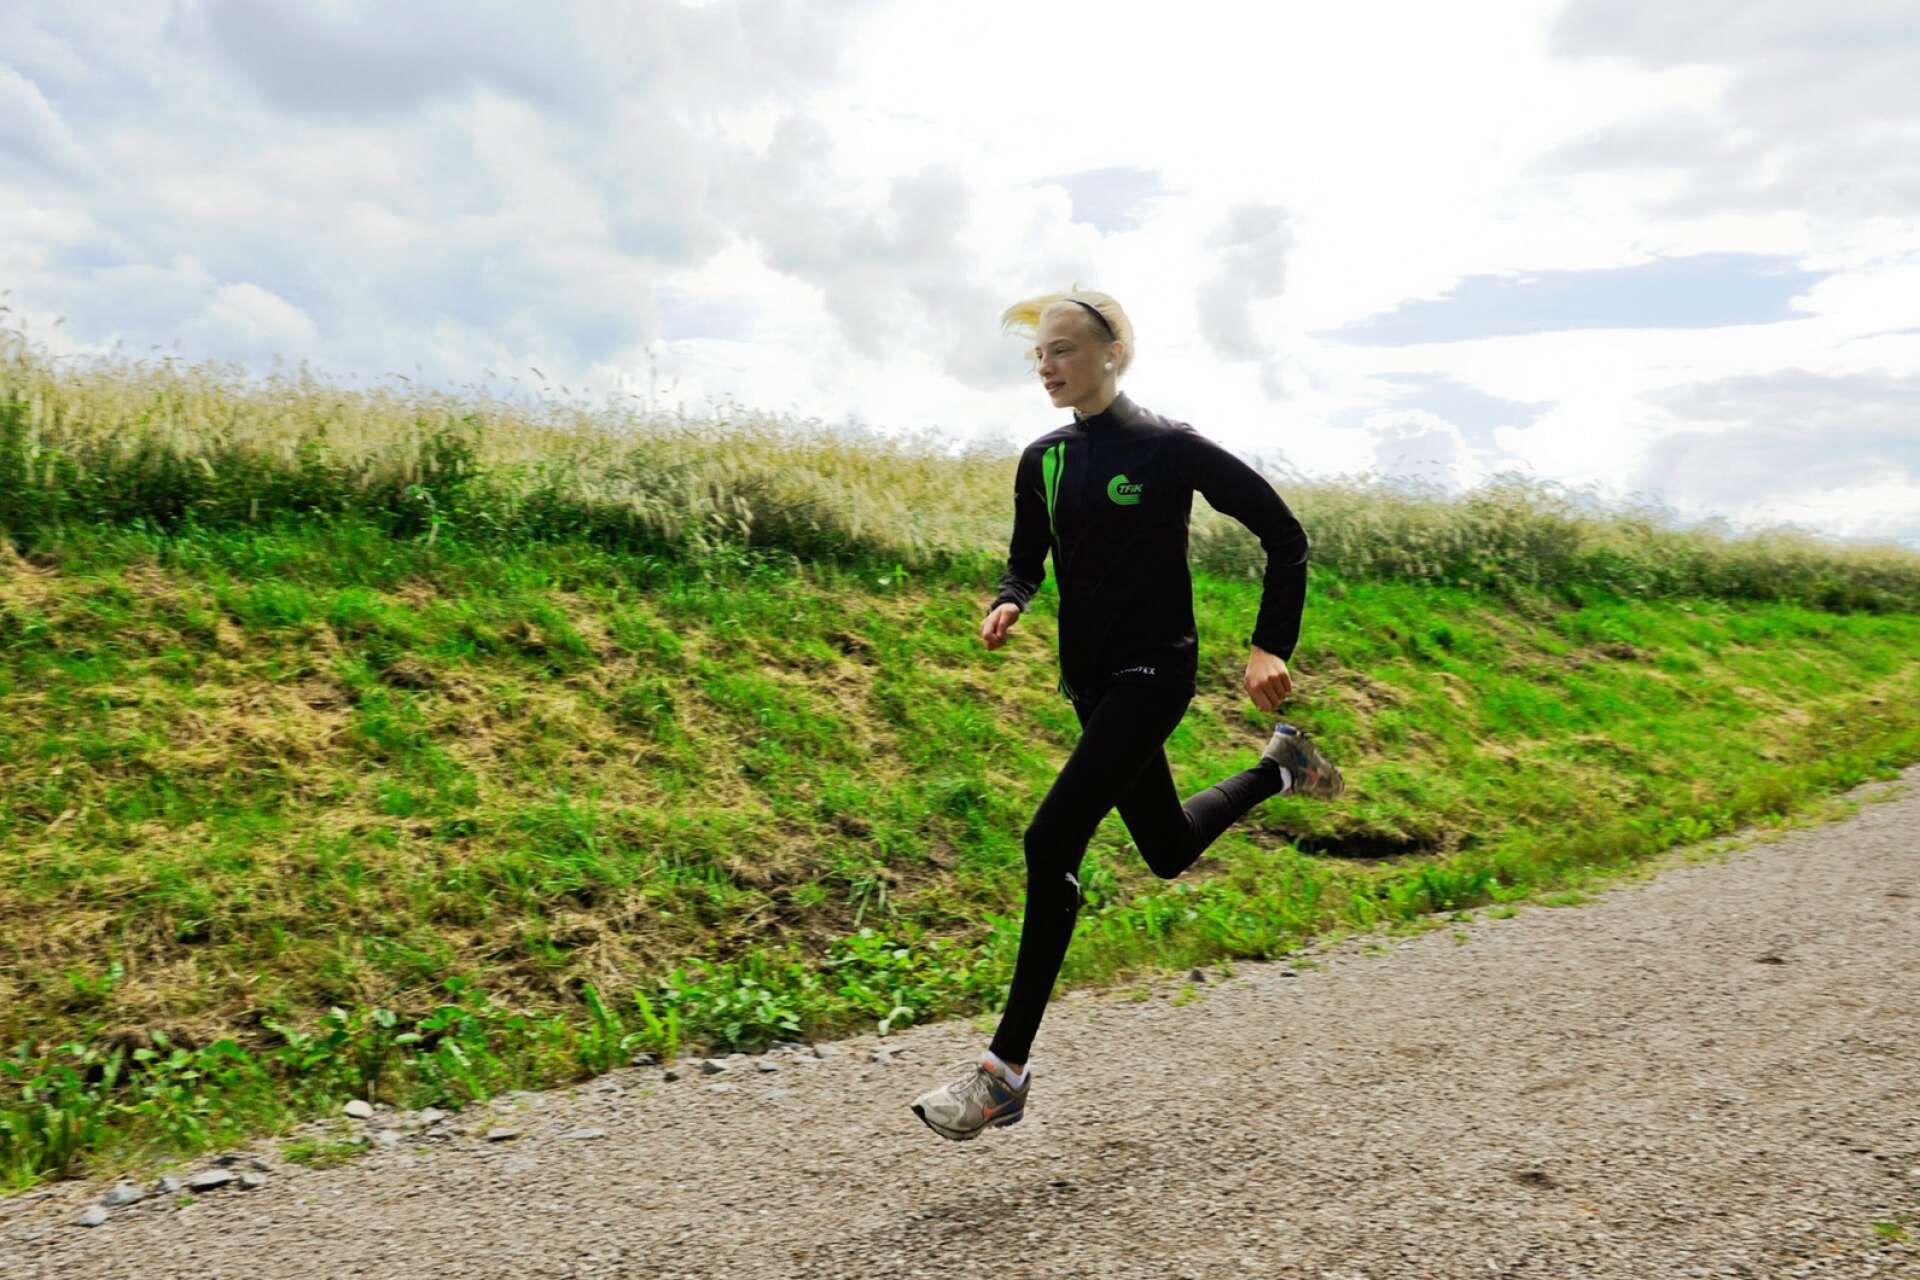 Runt åtta skor om året slits ut av Sara Christiansson. Det är många steg att ta som elitidrottare. Bilden är taget då Sara sprang för sin första friidrottsklubb, Trollhättans FIK. 